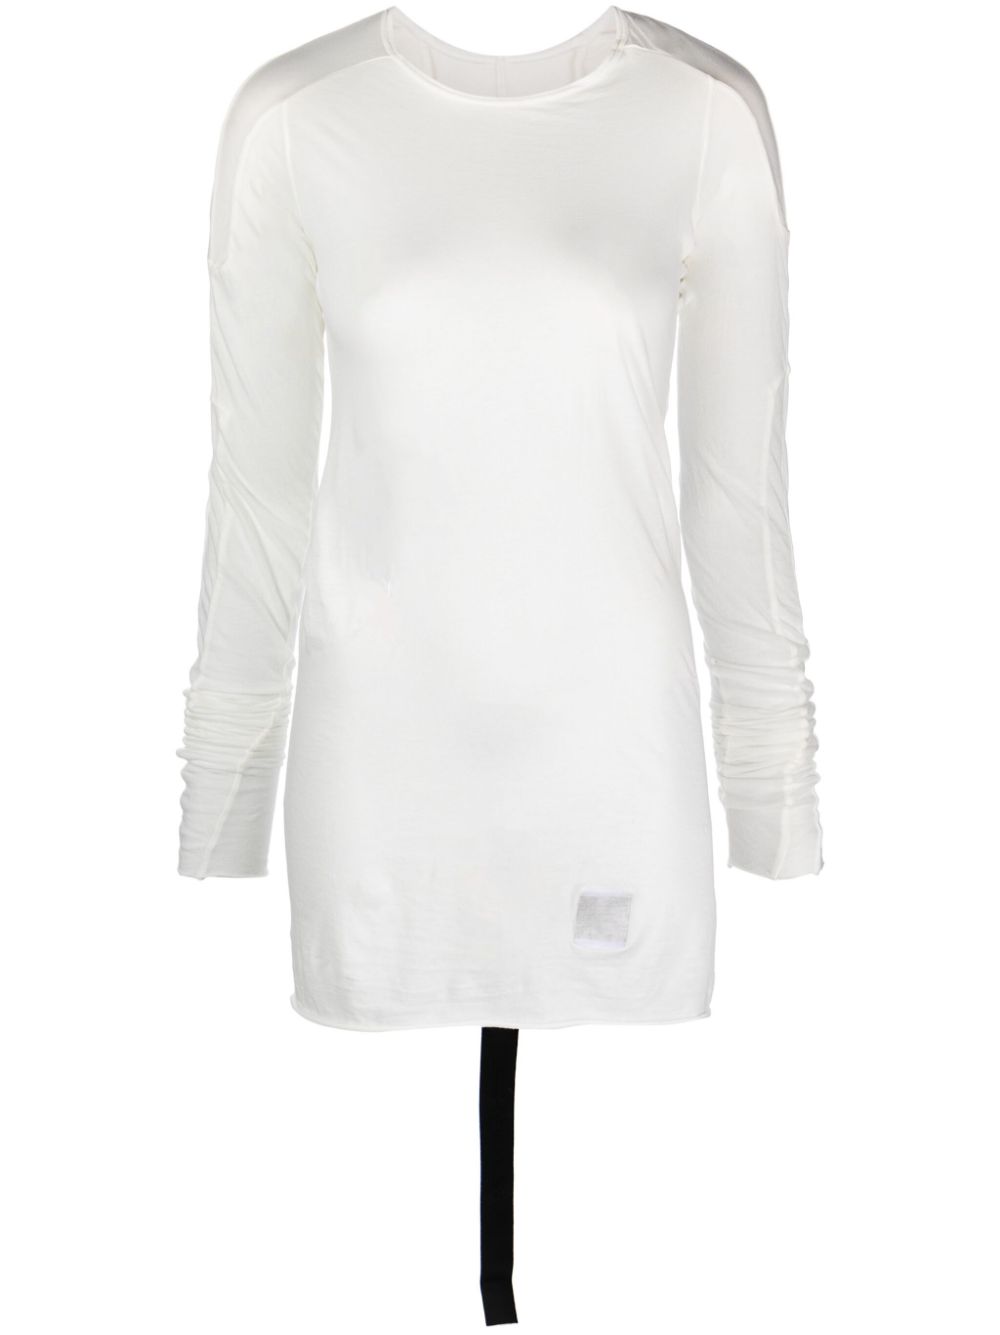 قميص تي شيرت بتصميم النقوش البيضاء اللبنية